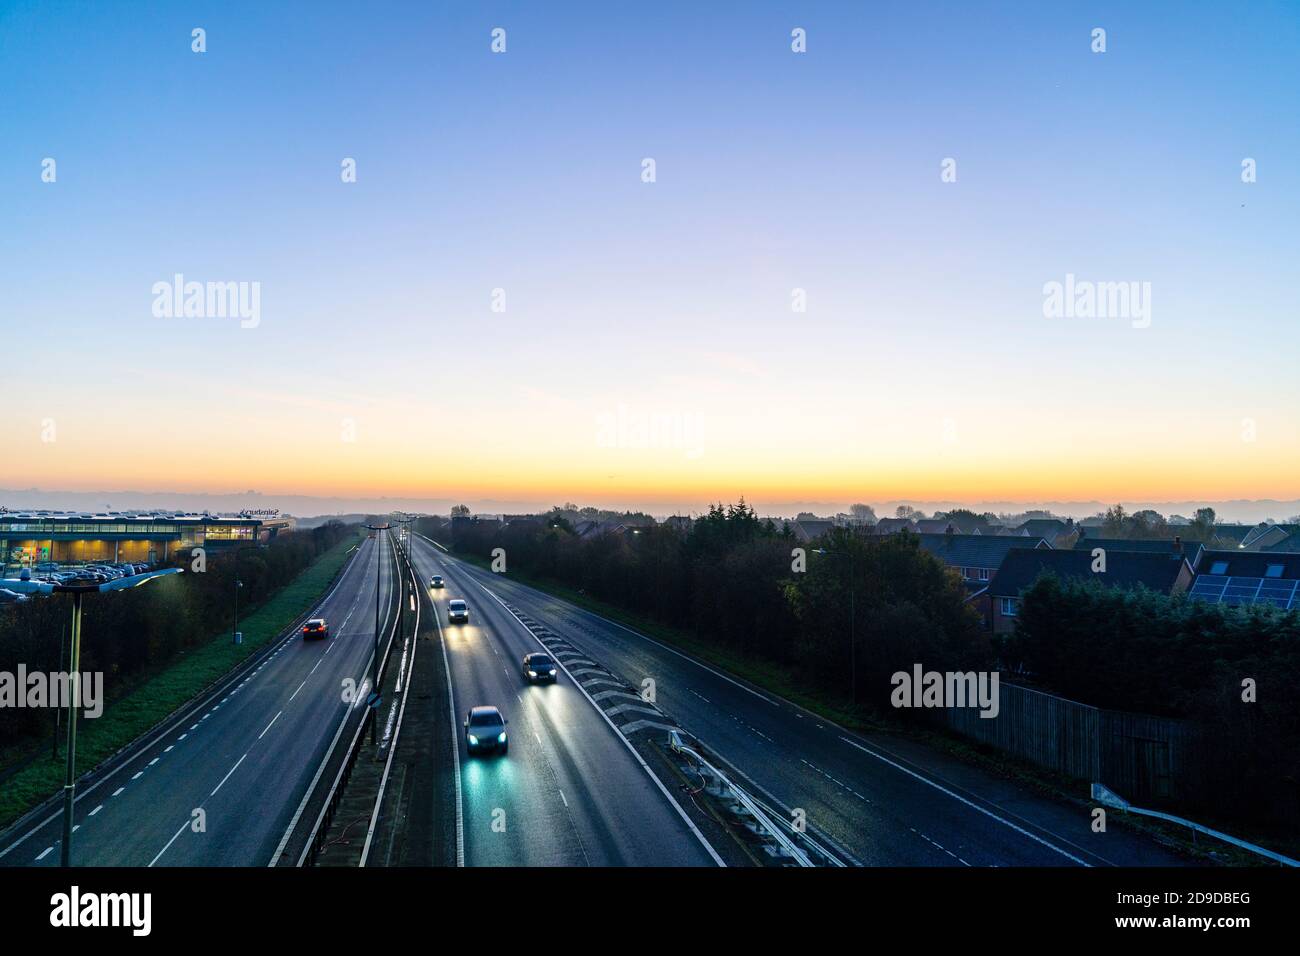 Überbrückung Ansicht des reduzierten Verkehrs Richtung London auf dem Thanet Weg in Broomfield, Herne Bay, Kent am 1. Tag der zweiten landesweiten Sperre während der COVID Pandemie. Am frühen Morgen bricht der Morgenhimmel am Horizont auf. Stockfoto